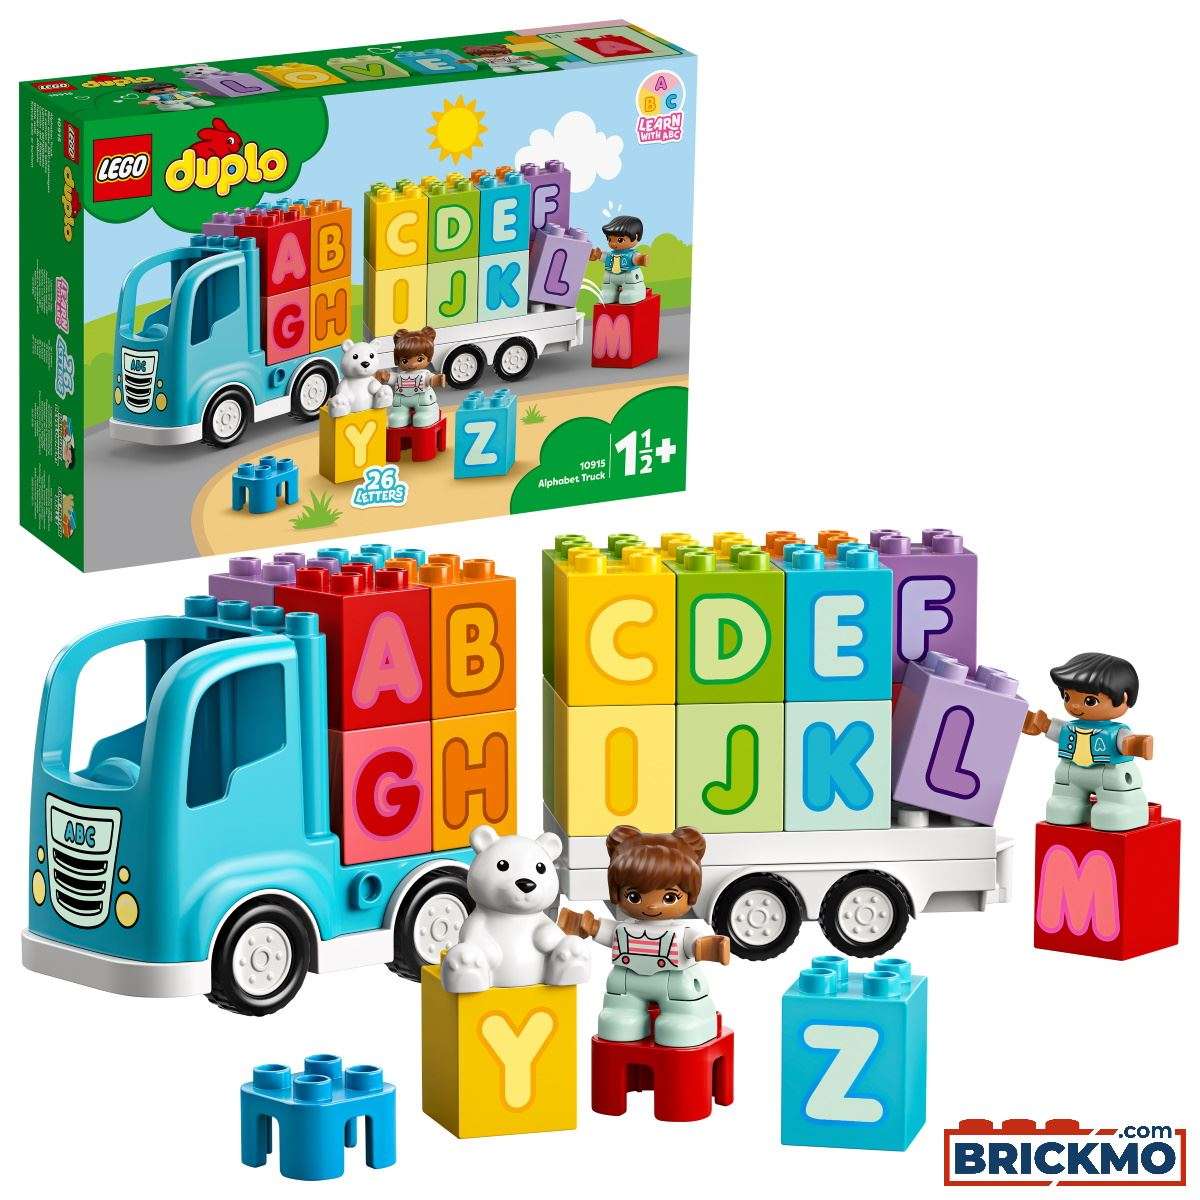 LEGO Duplo 10915 Mein erster ABC Lastwagen 10915